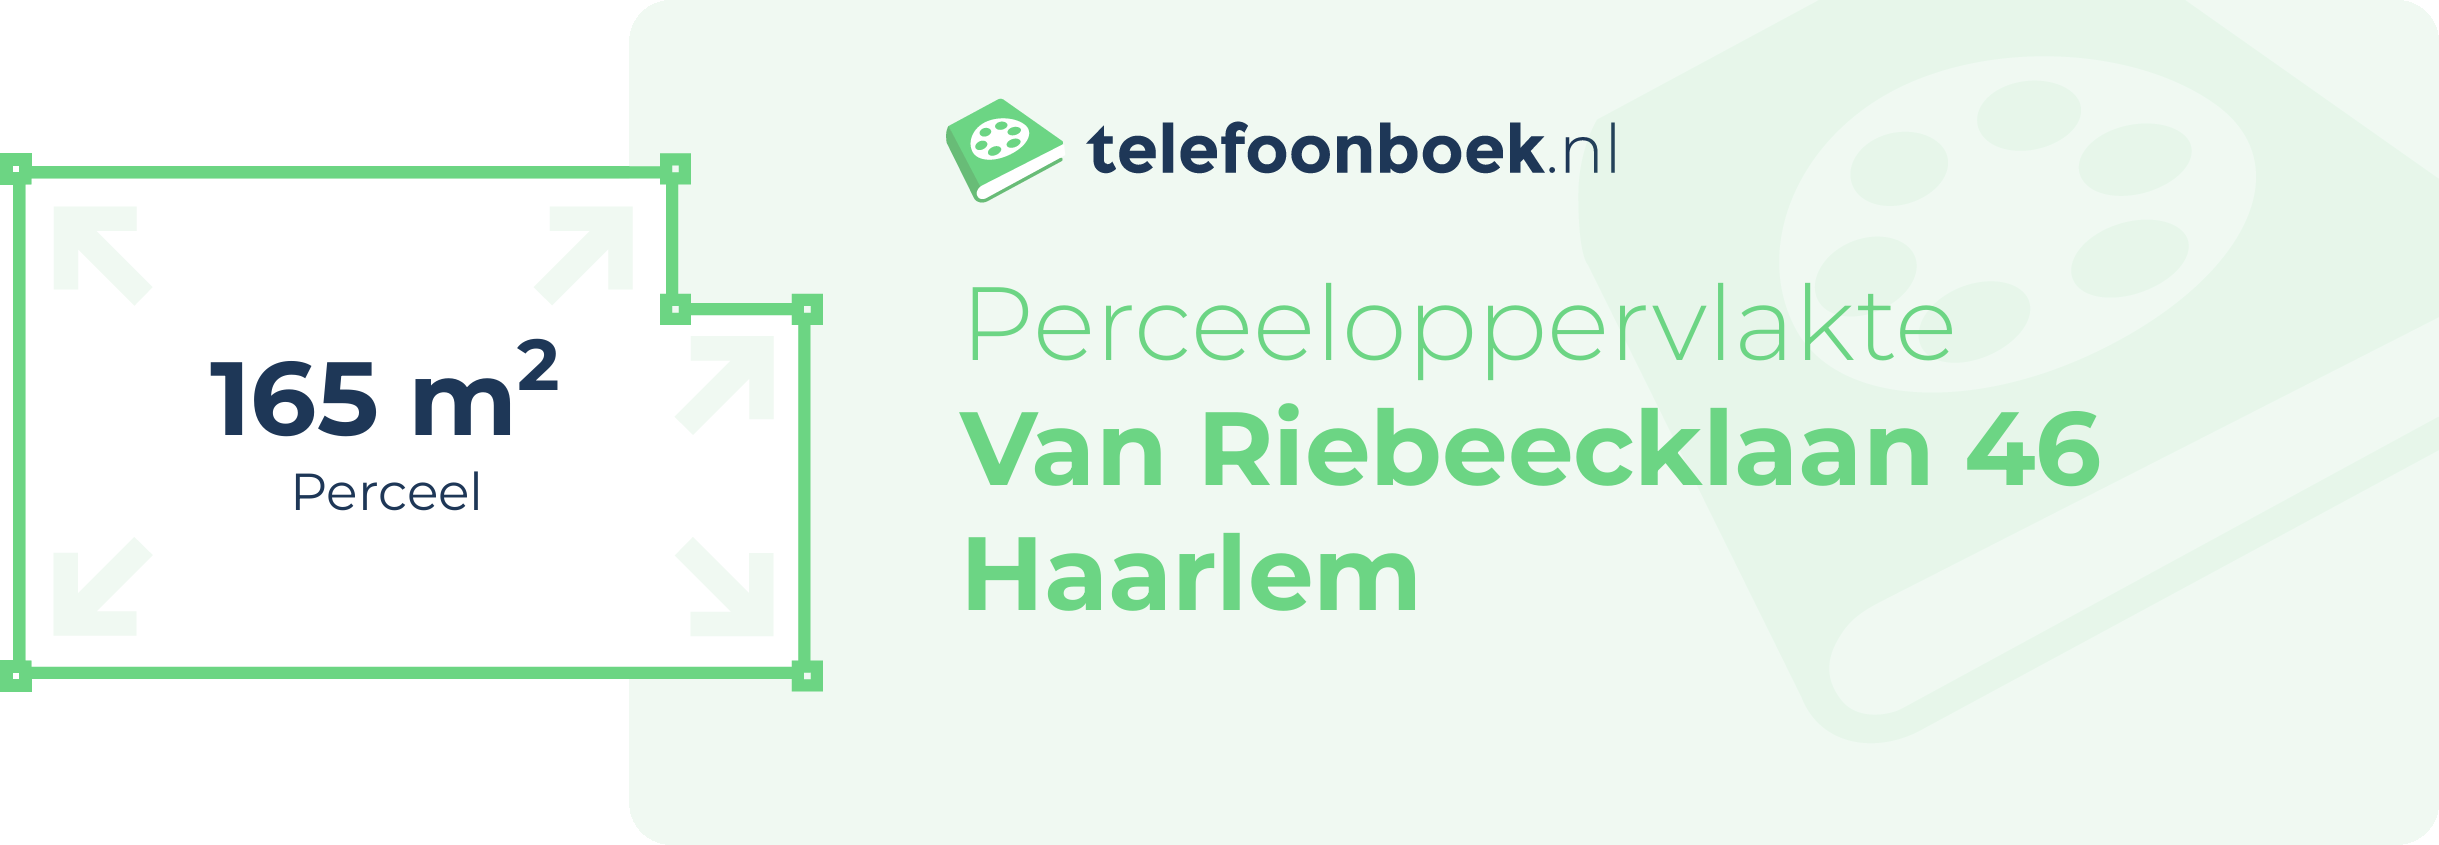 Perceeloppervlakte Van Riebeecklaan 46 Haarlem